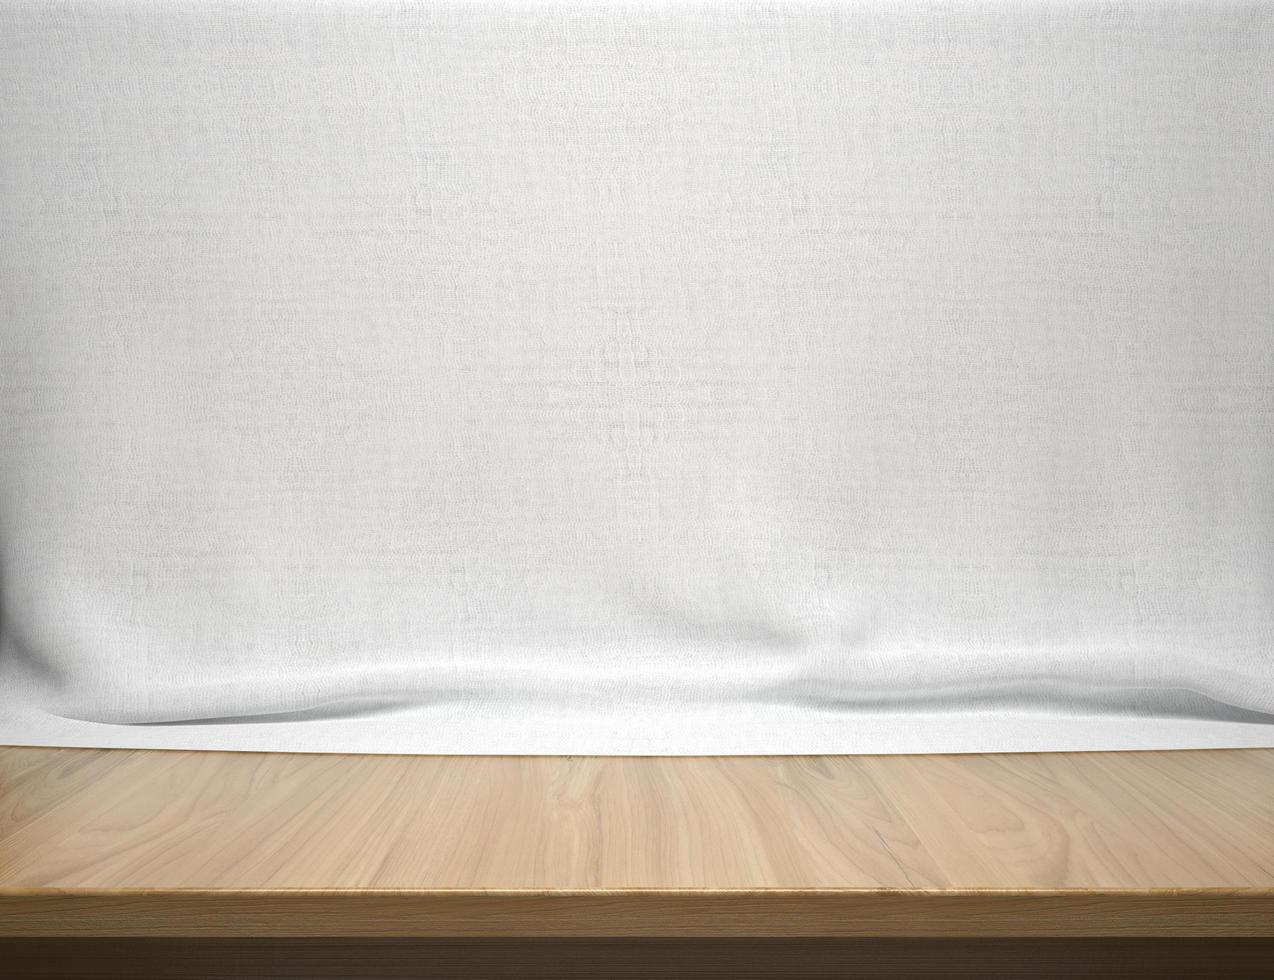 träbord med vit bomullstygbakgrund foto